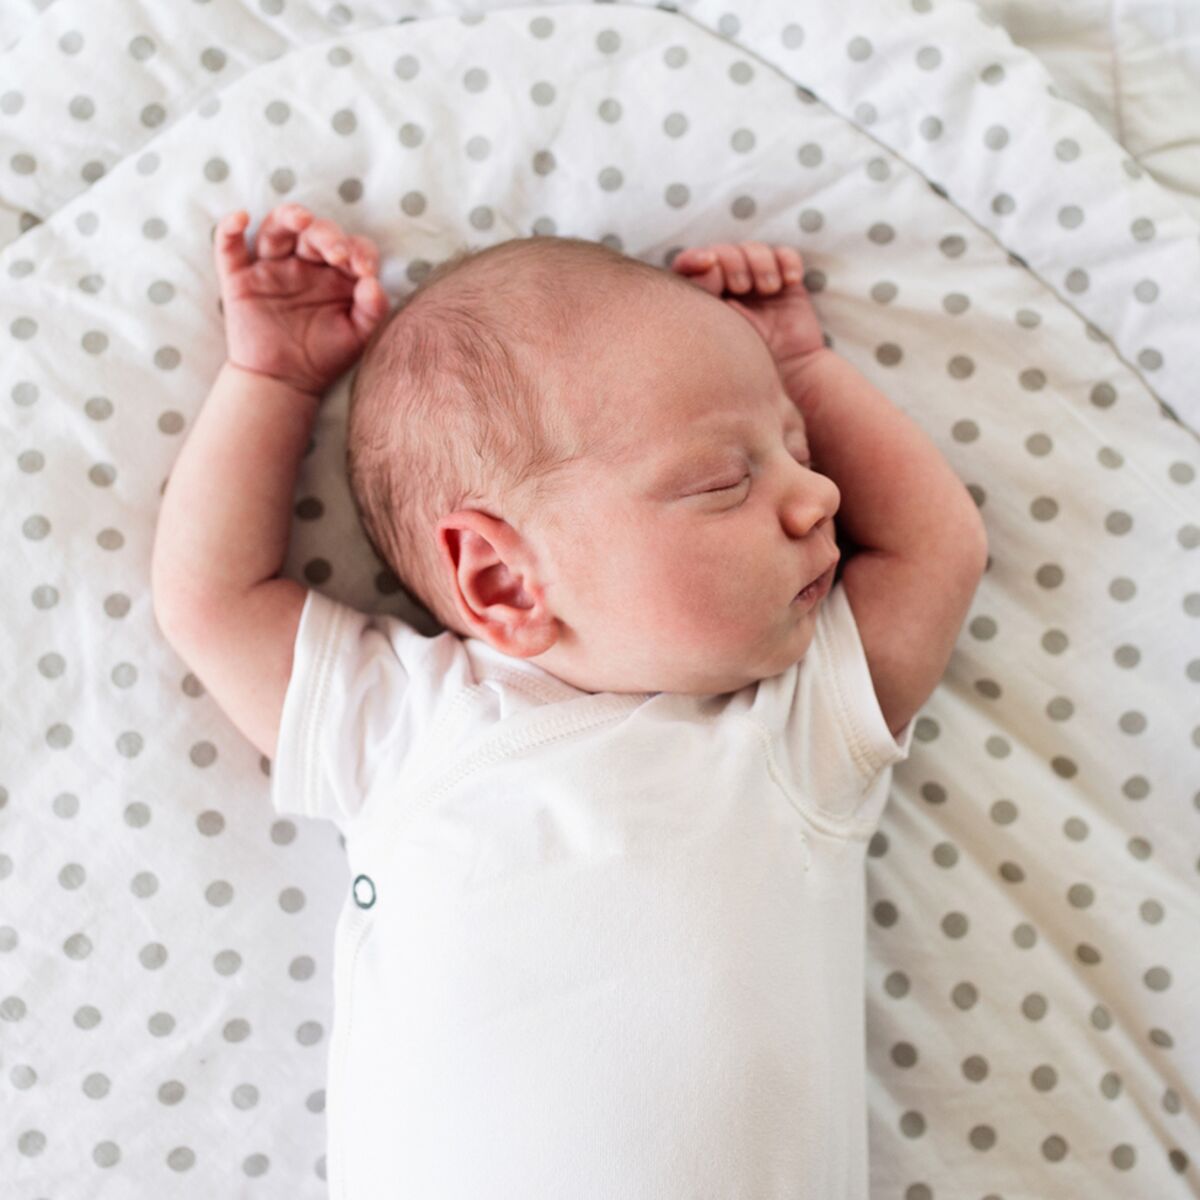 Faire Dormir Son Bebe En Toute Securite Les Conseils Du Pediatre Femme Actuelle Le Mag